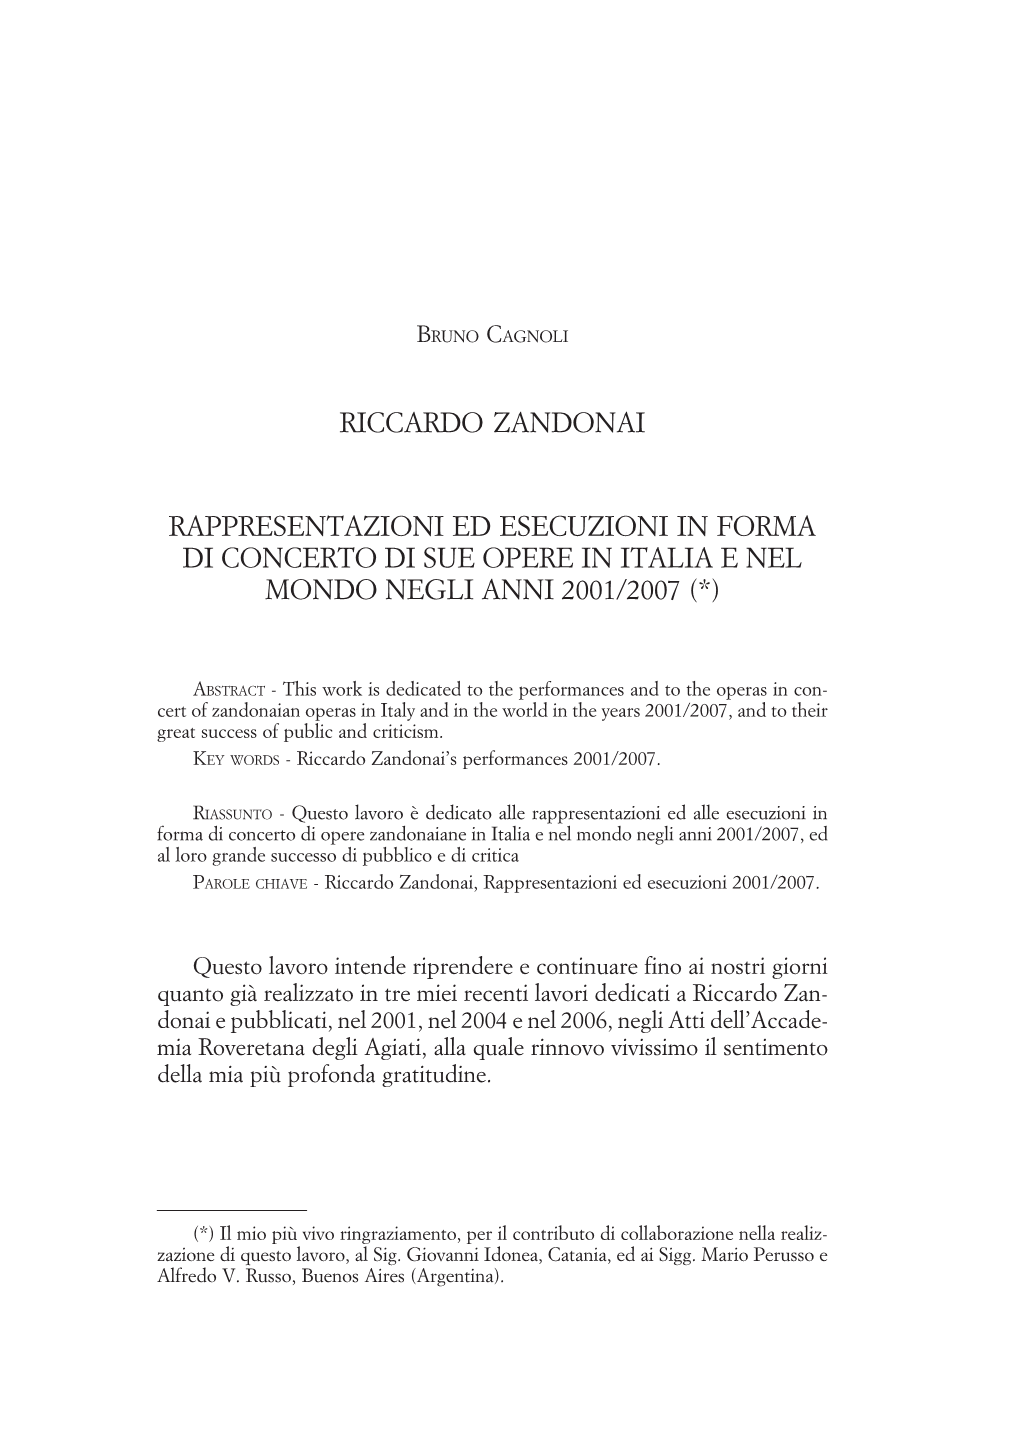 Riccardo Zandonai Rappresentazioni Ed Esecuzioni in Forma Di Concerto Di Sue Opere in Italia E Nel Mondo Negli Anni 1994/ 2000, Rovereto 2001)